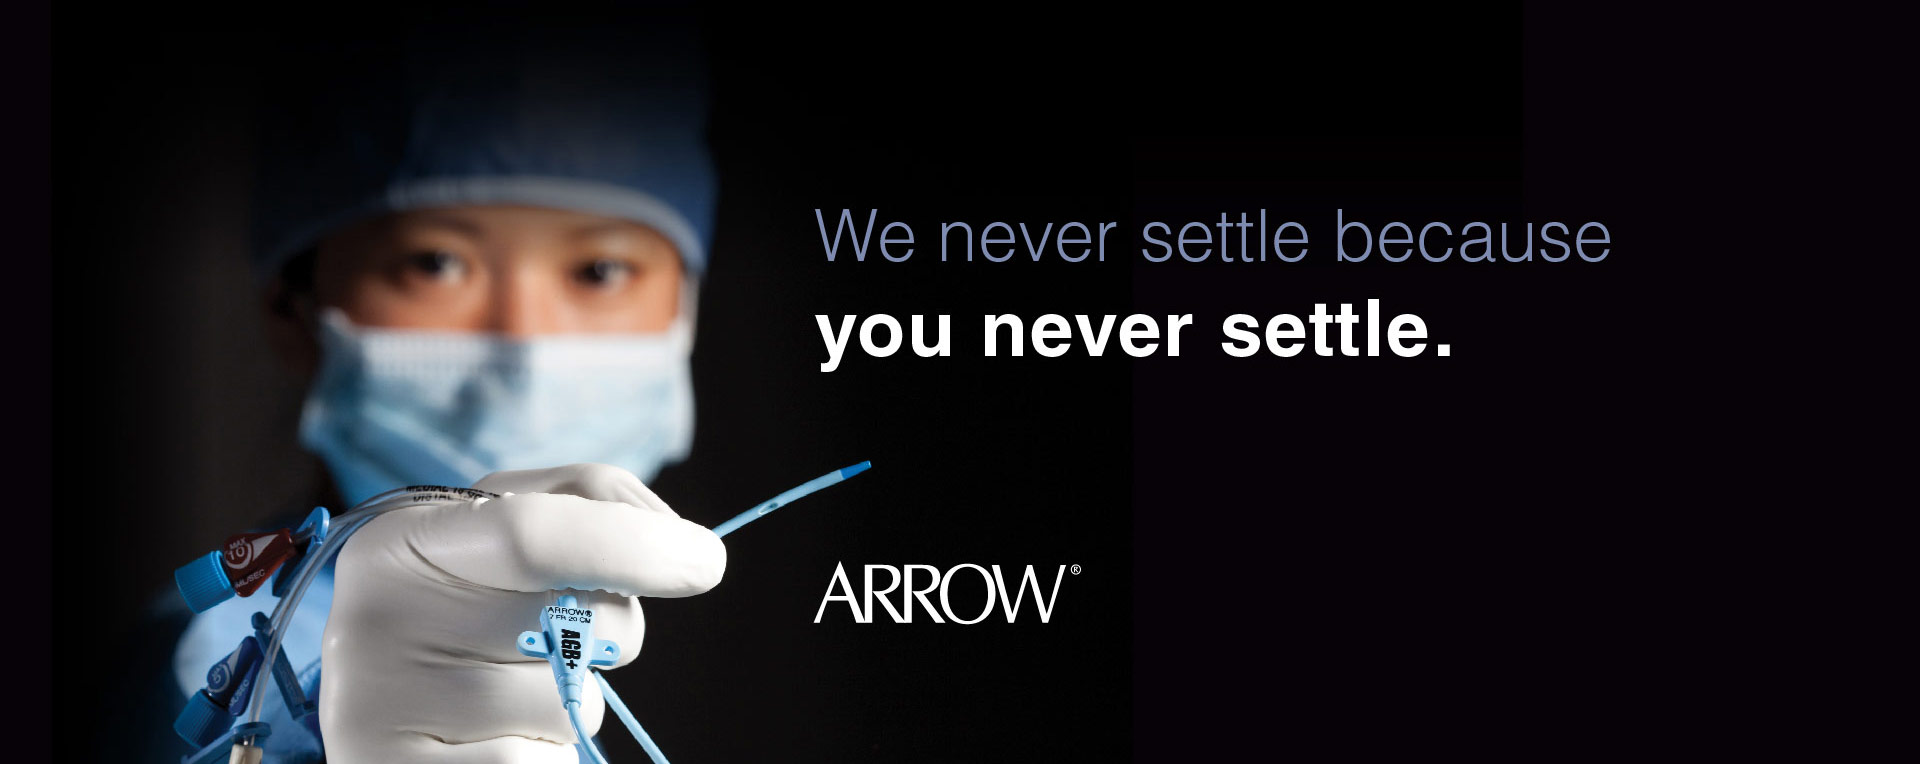 Arrow Never Settle Medical Marketing Rebranding Case Study